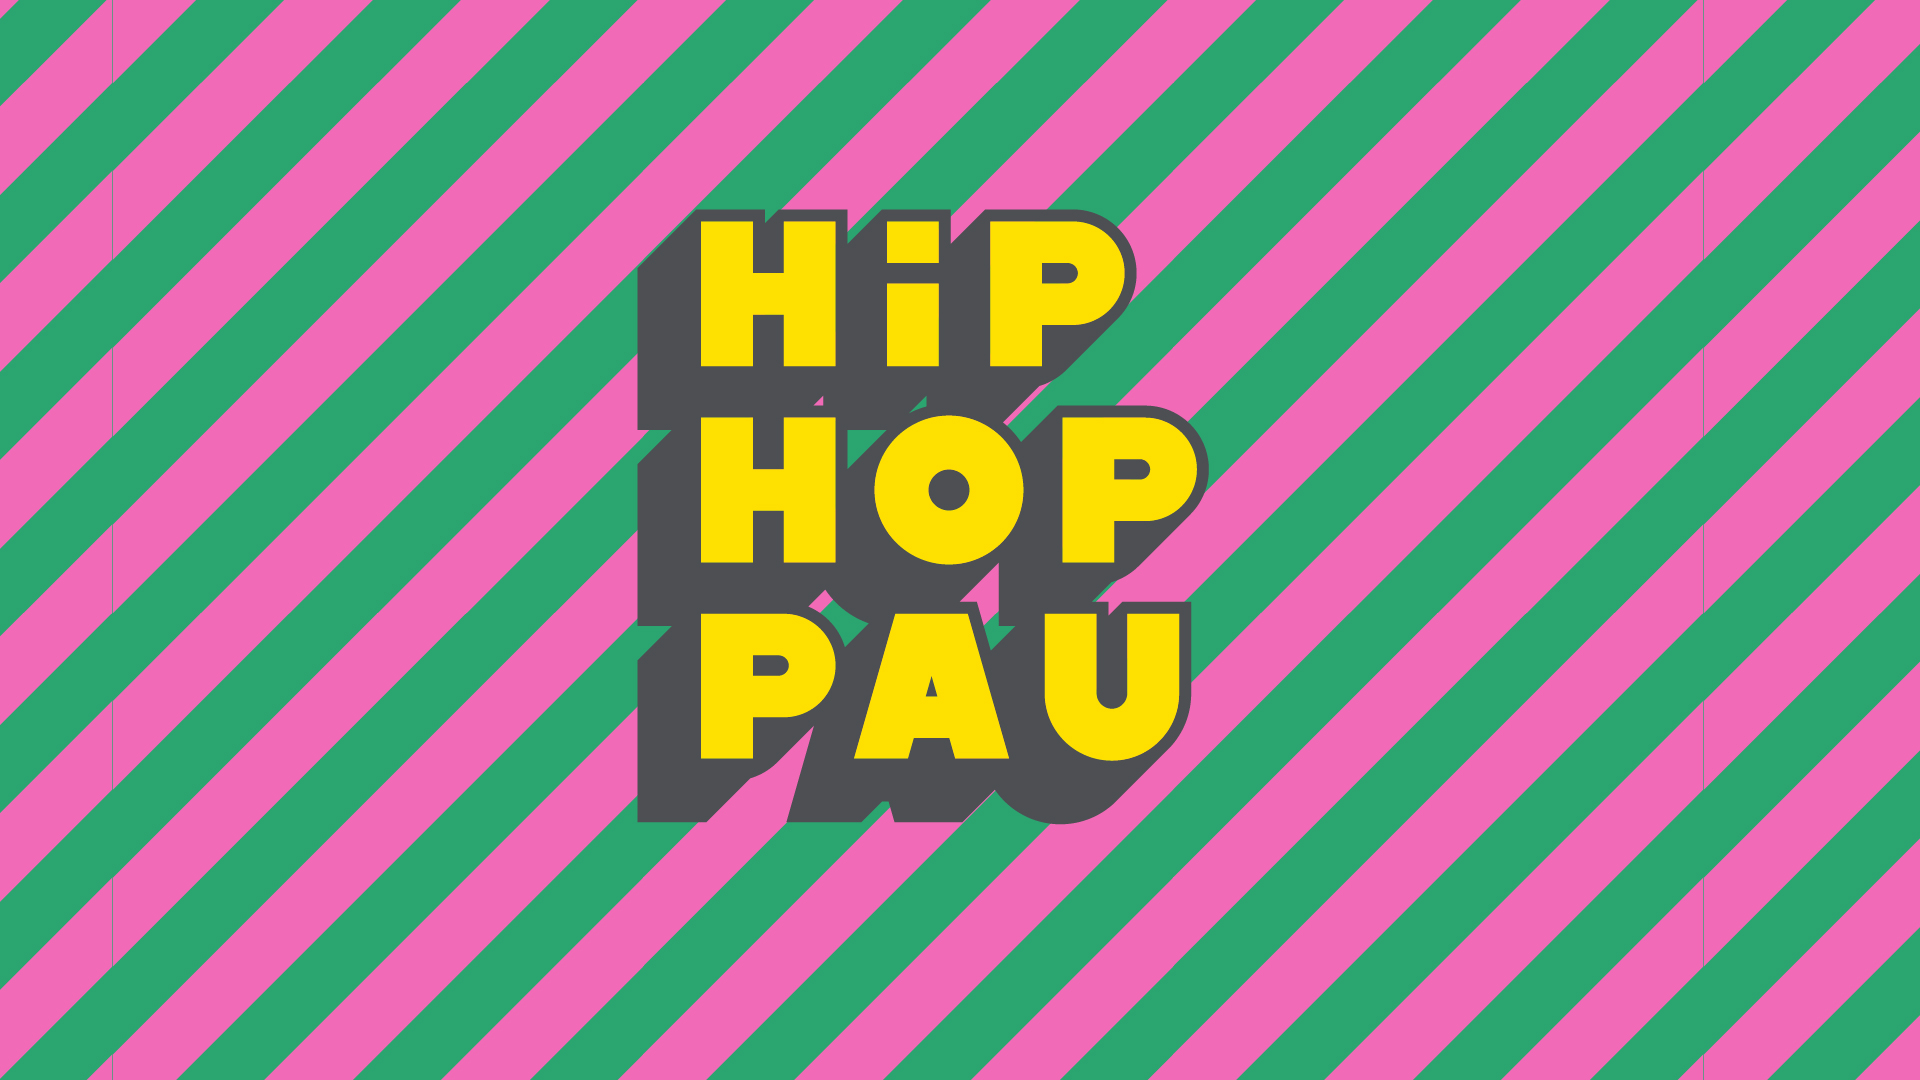 En marxa la setena edició del concurs #HipHopPau adreçat a joves d’entre 12 i 25 anys